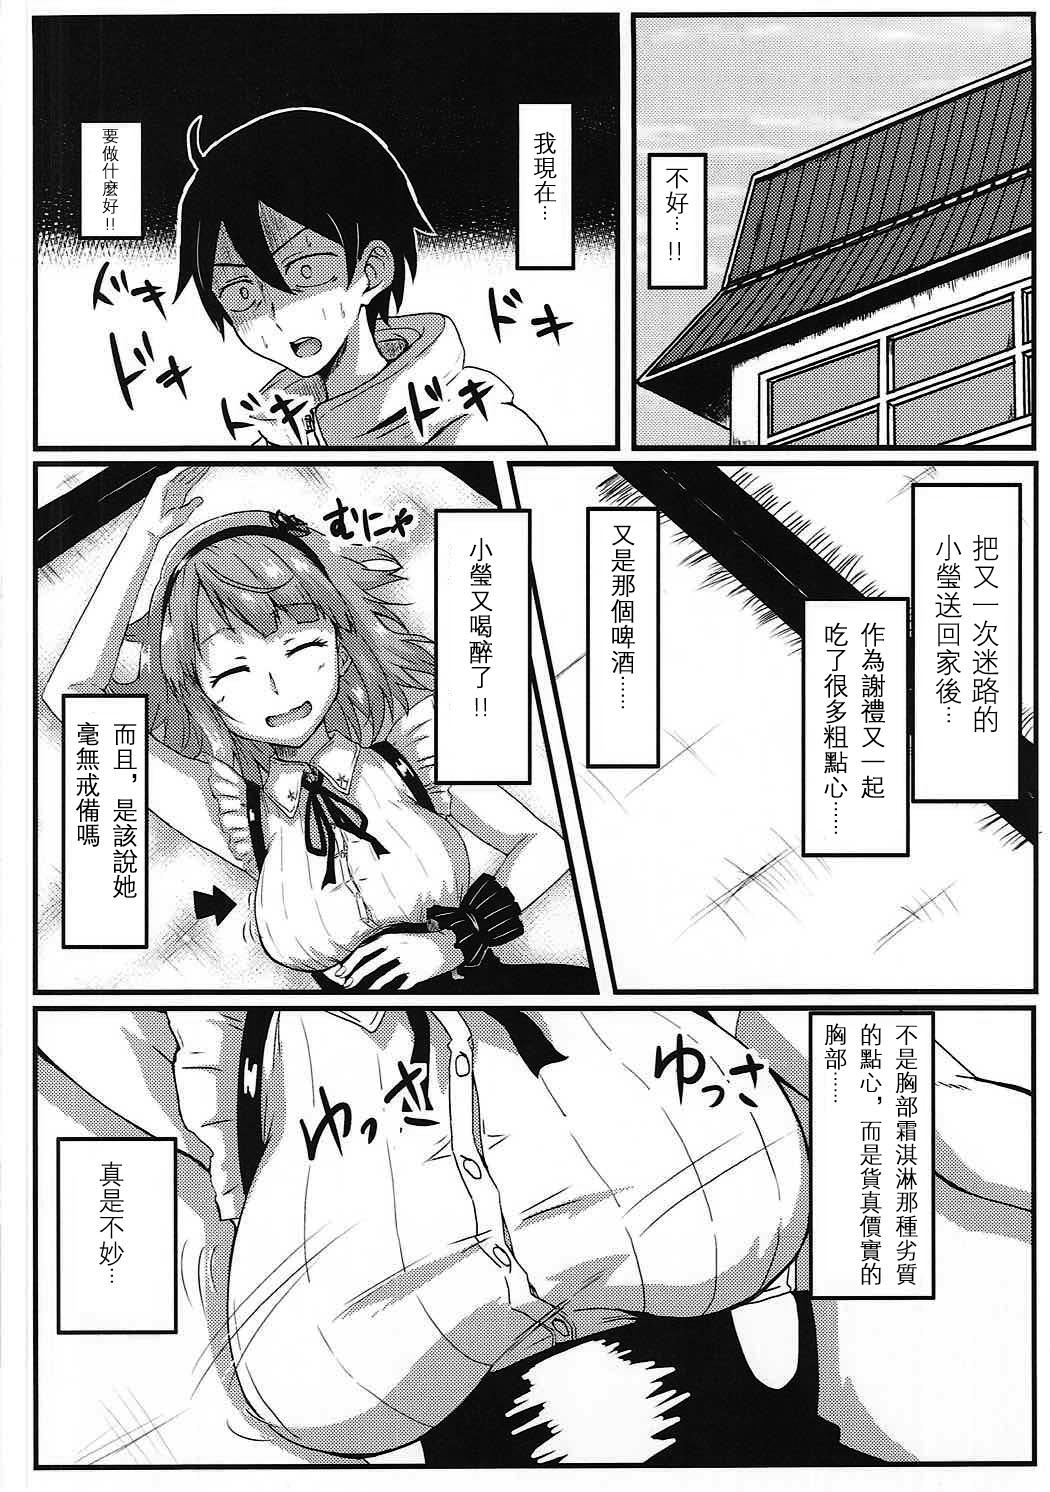 Classy Hotaru-san wa Dagashi no Kaori? - Dagashi kashi Gang - Page 4